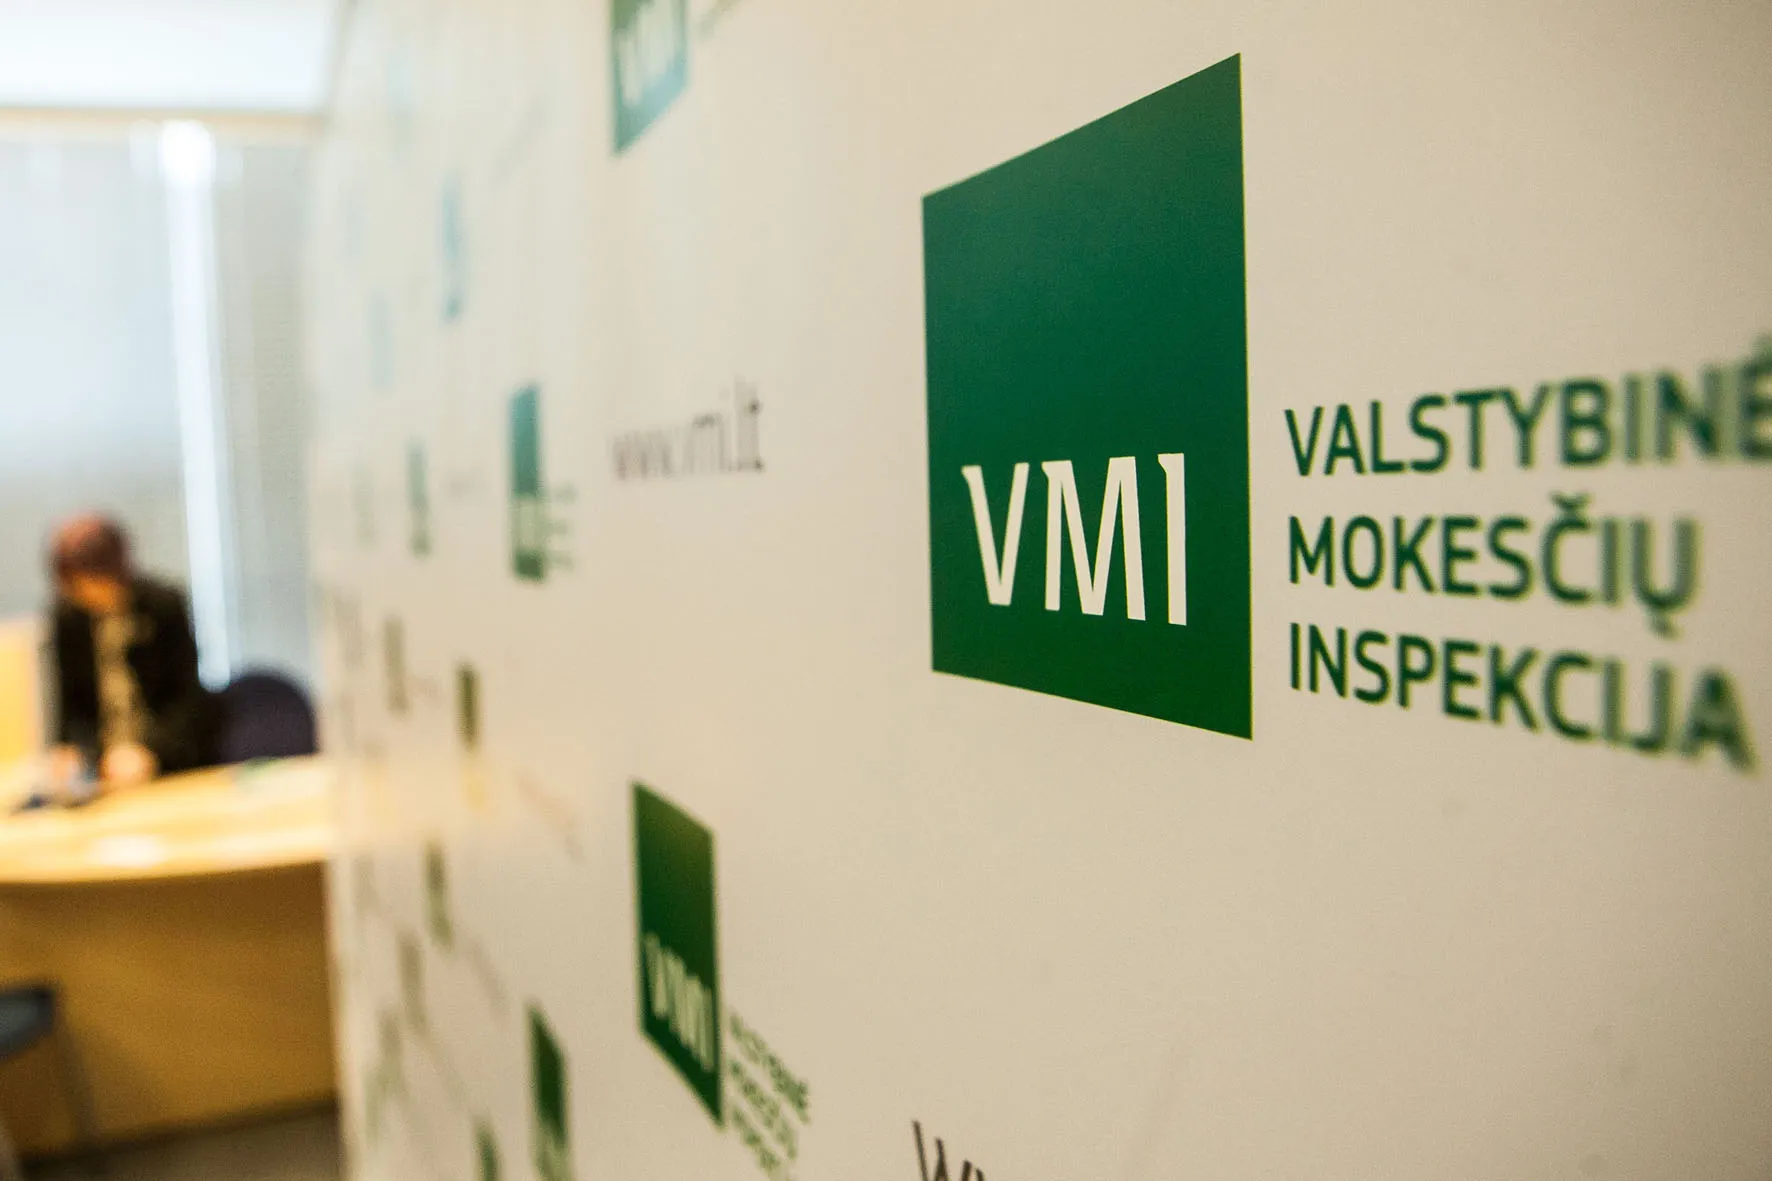 VMI (Valstybinė mokesčių inspekcija)